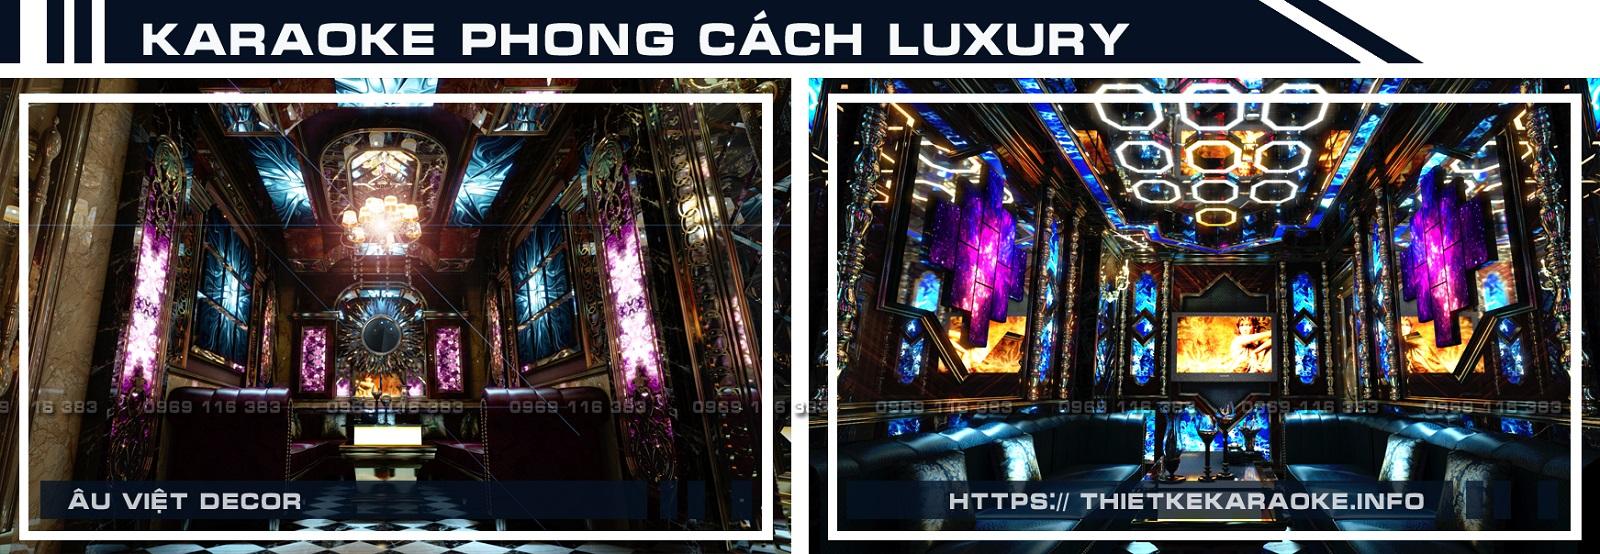 Karaoke Phong Cach Luxury